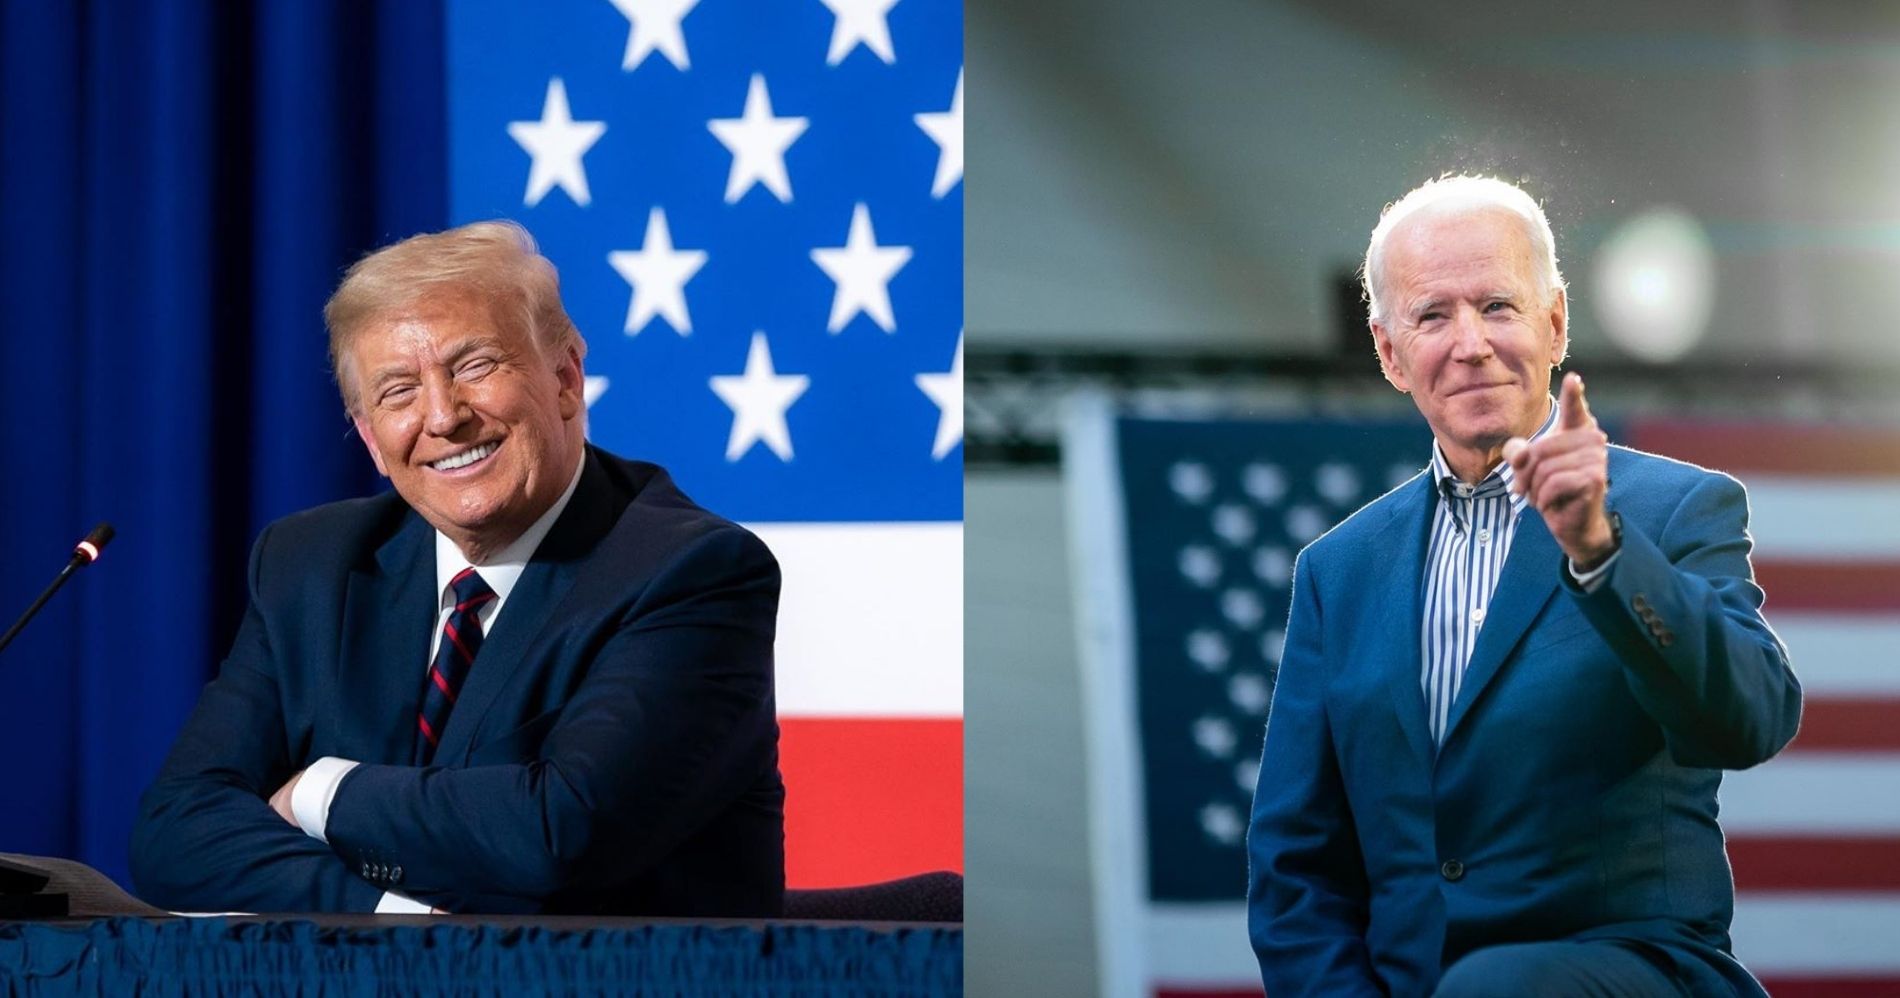 Donald Trump & Joe Biden - Image: Instagram